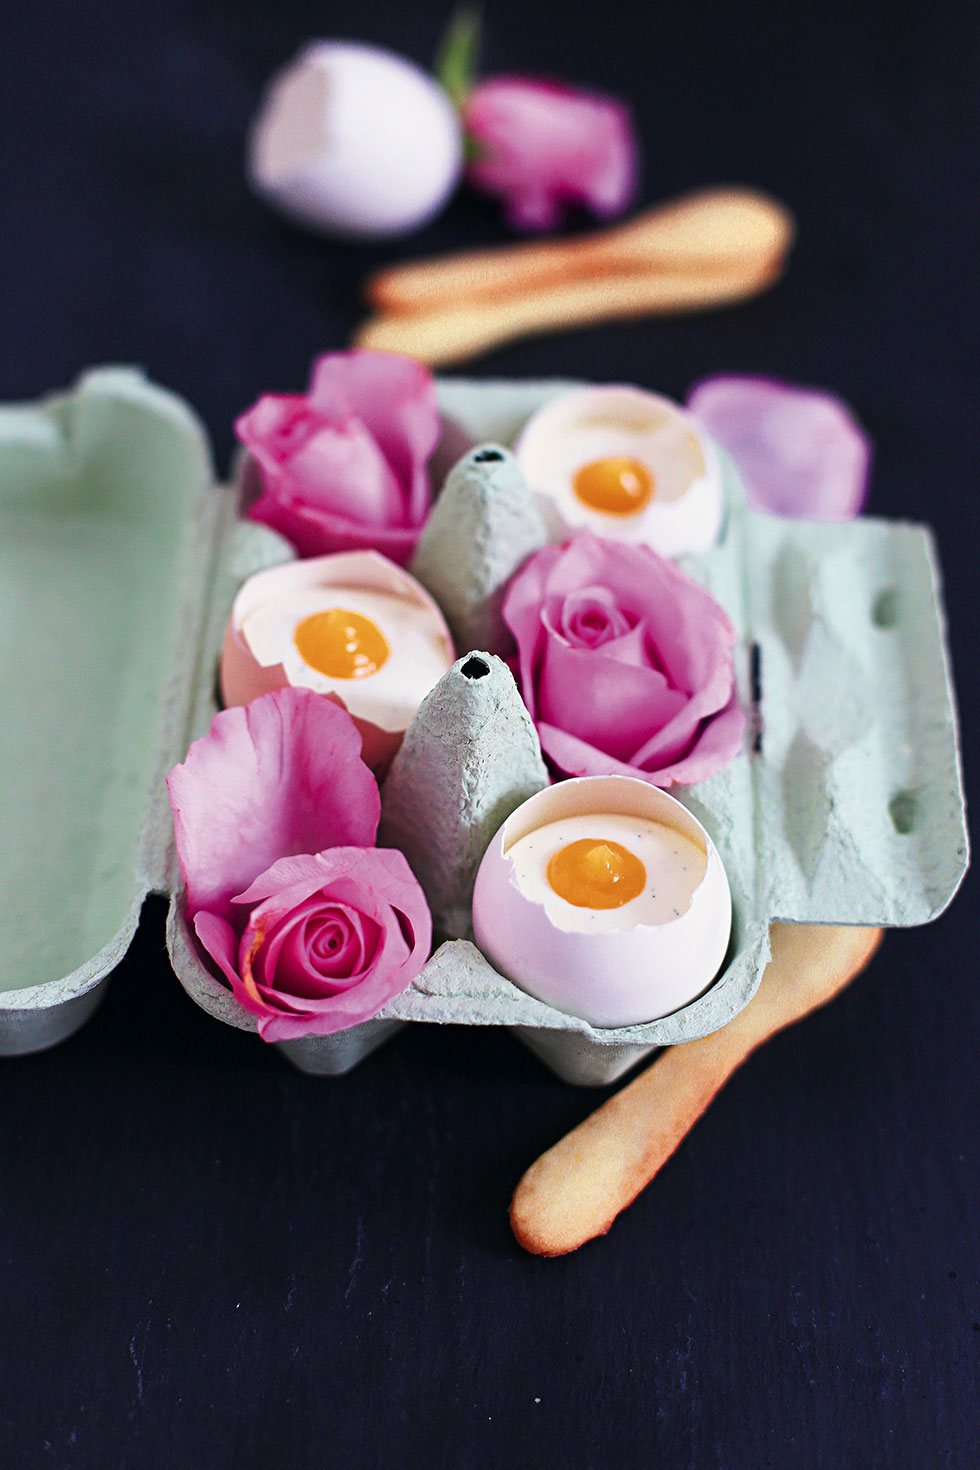 Cheesecake-Füllung serviert in echten Eierschalen im Karton, dekoriert mit Lemon Curd